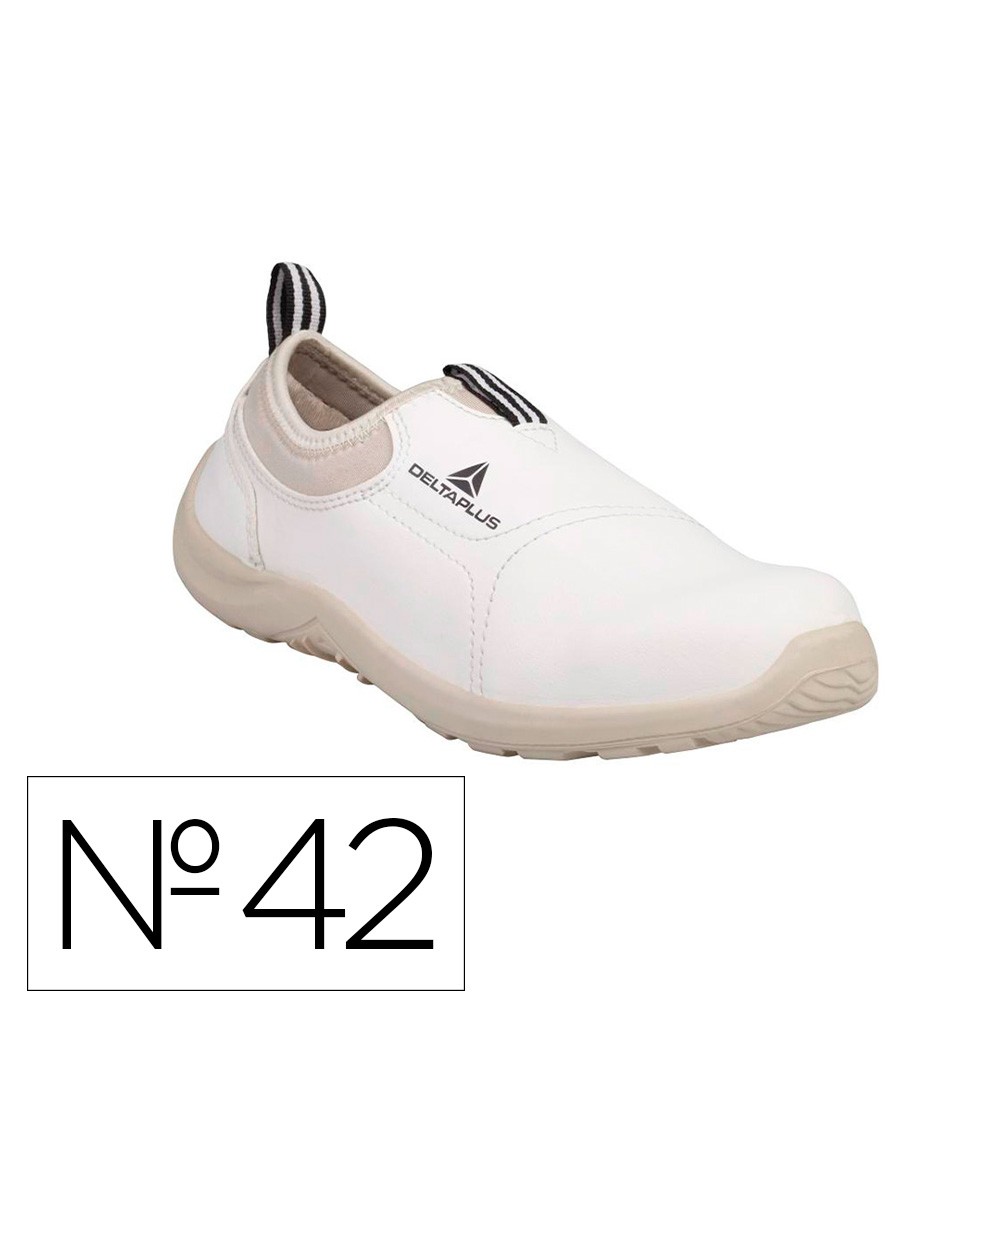 Zapatos de seguridad deltaplus microfibra pu suela pu mono densidad color blanco talla 42